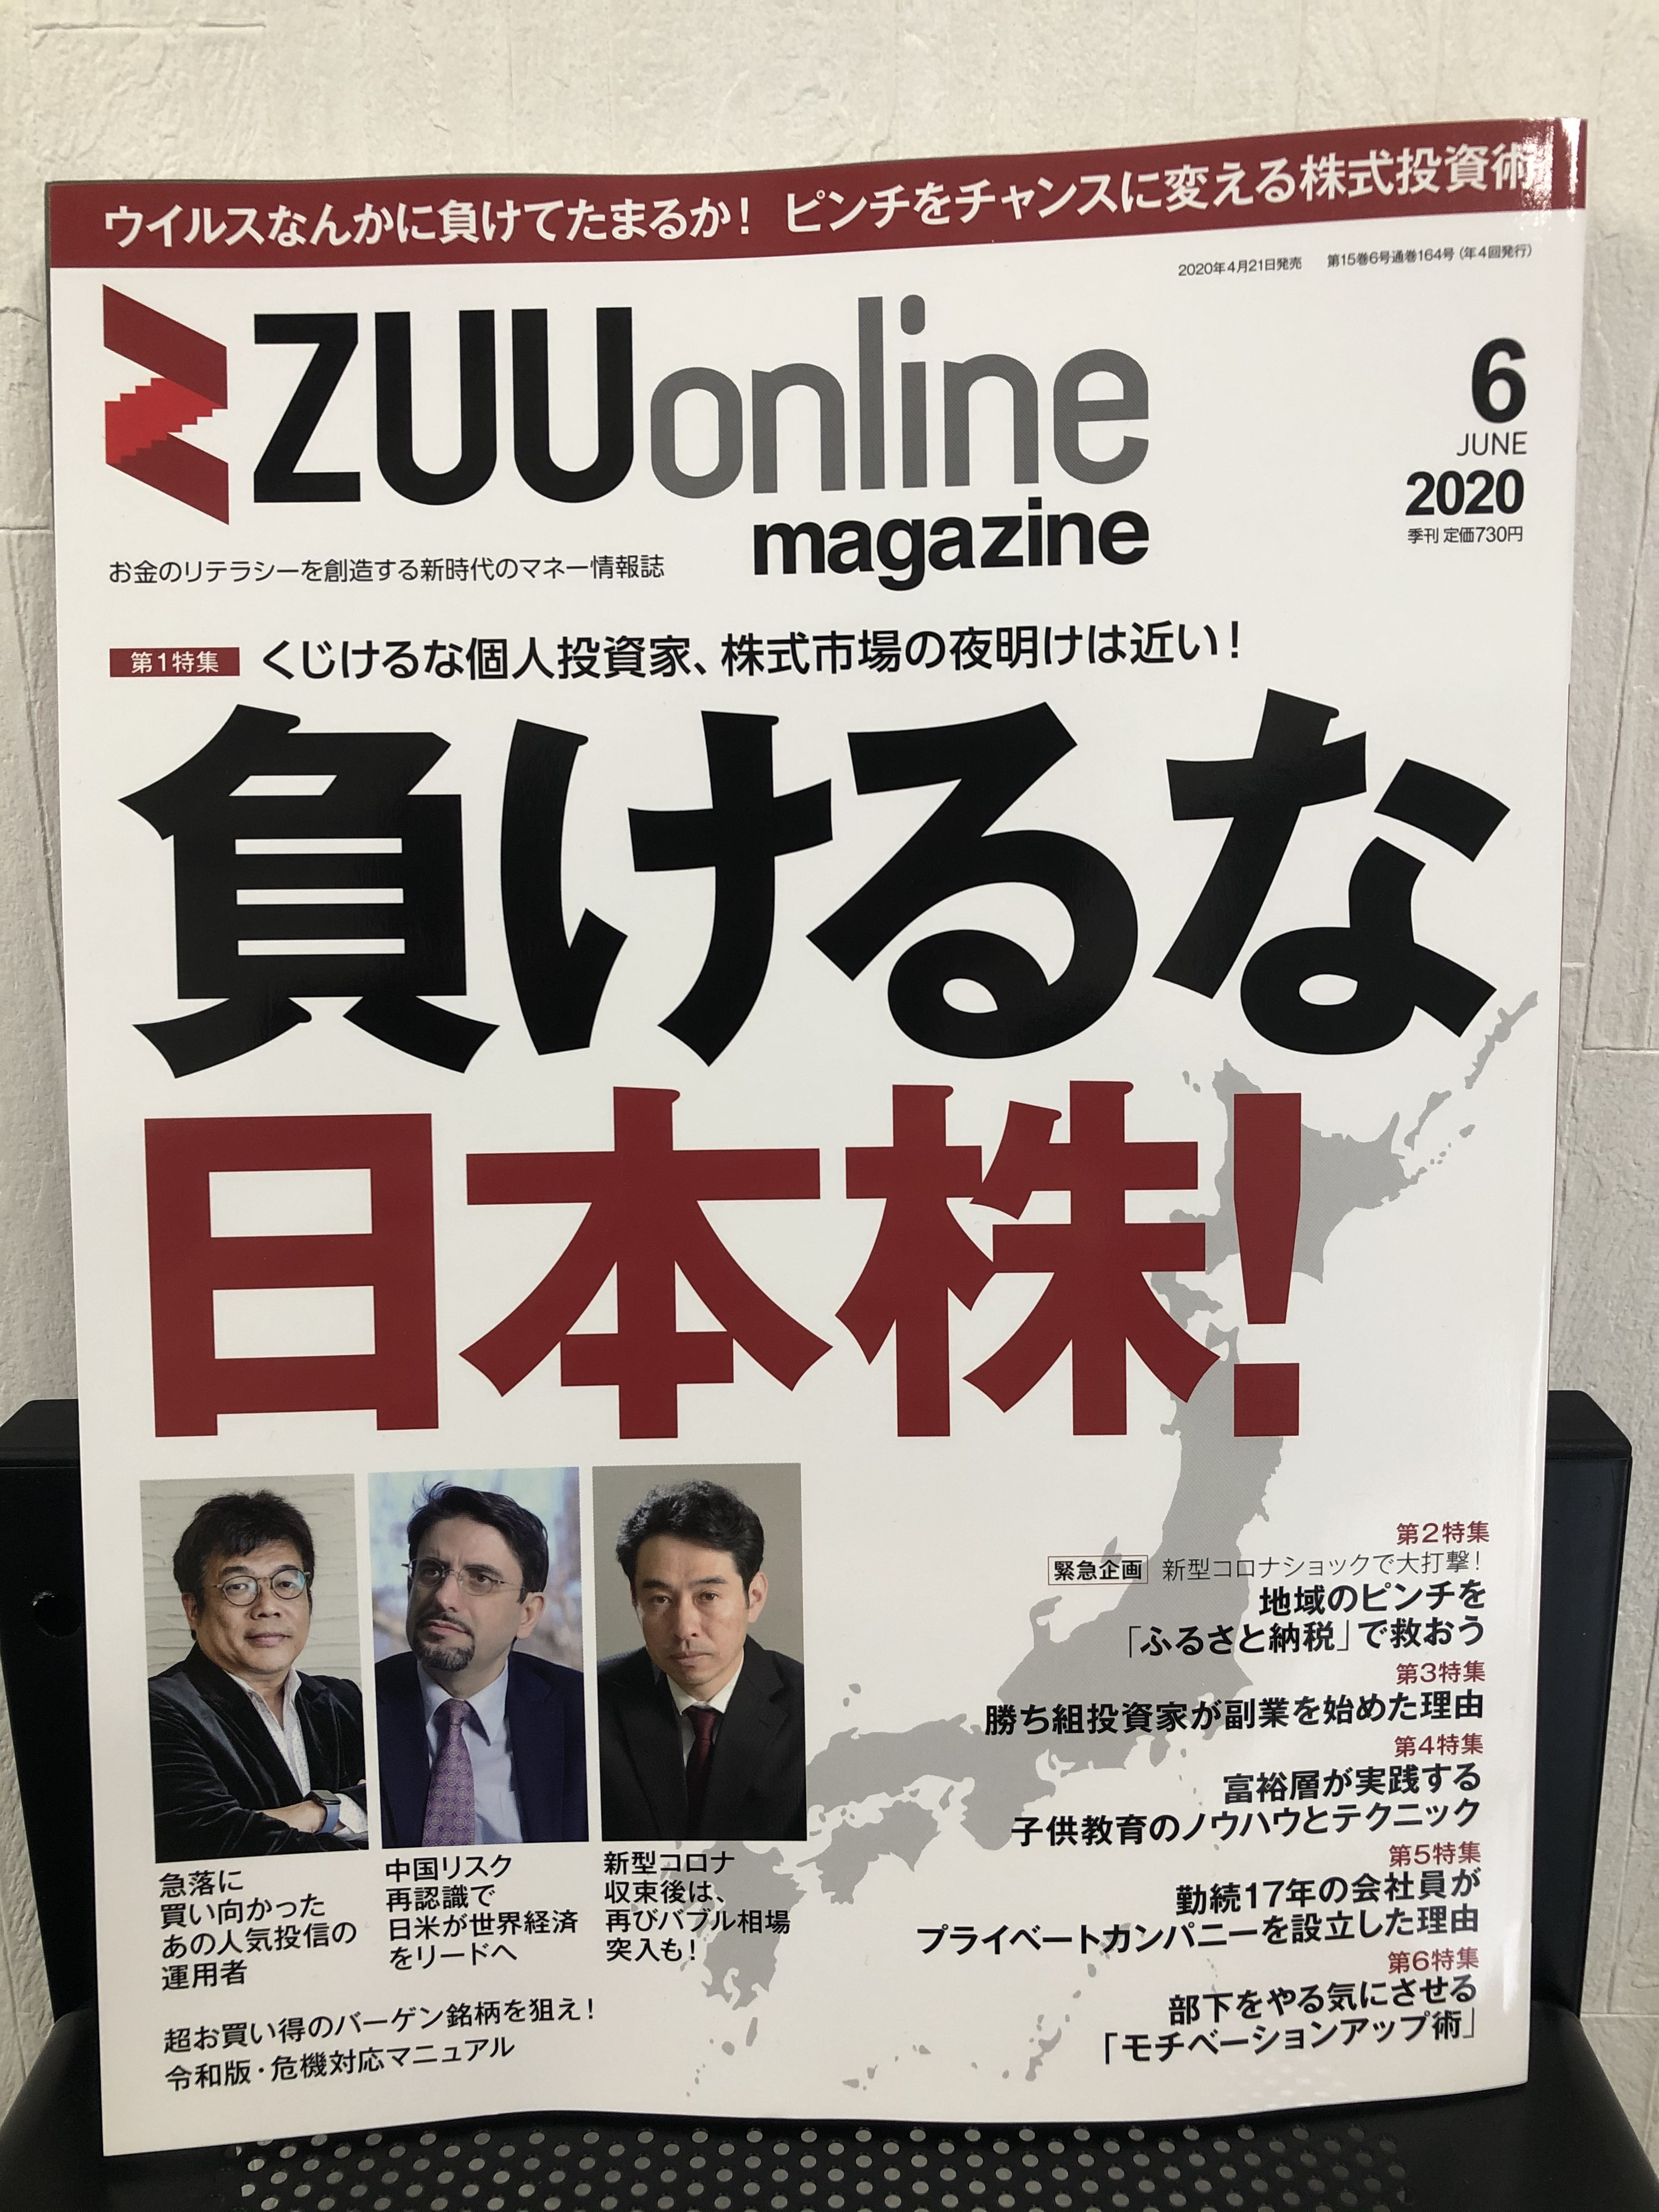 『ZUU online magazine』2020年6月号への寄稿のお知らせ